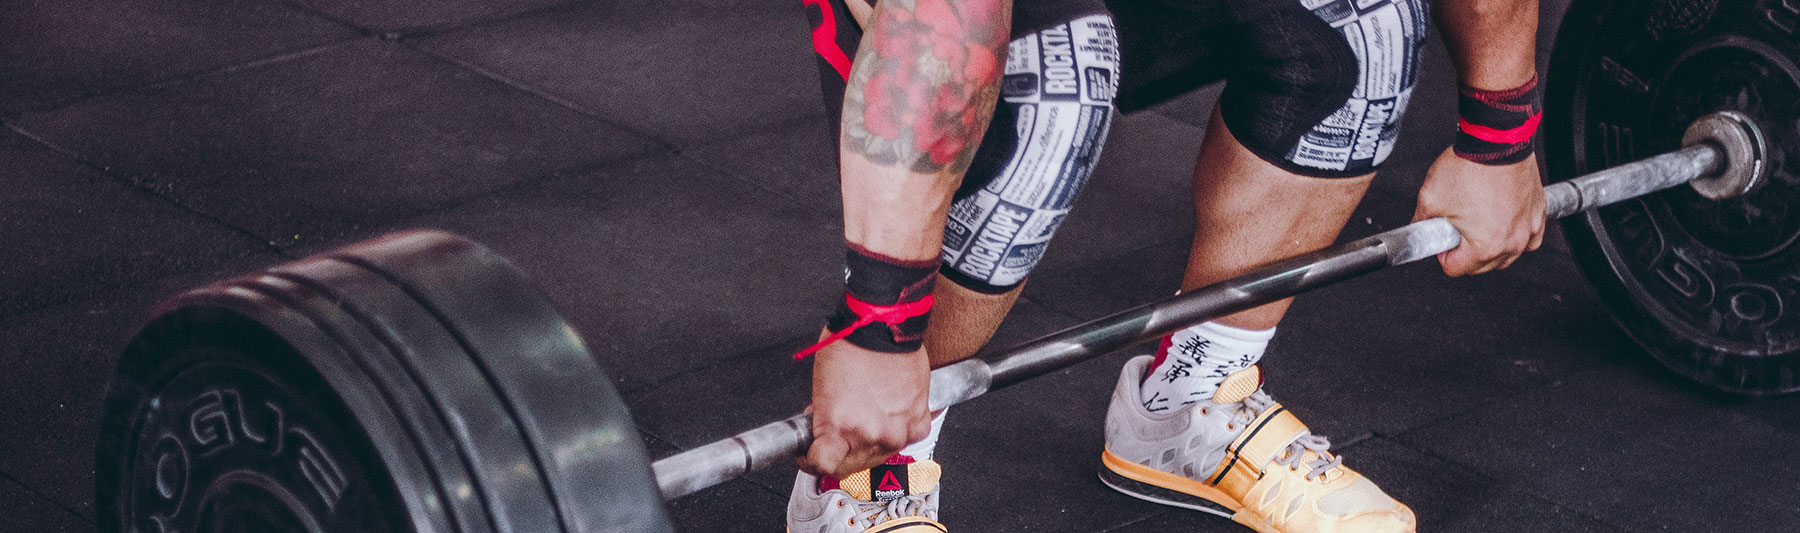 Fascia con fermapolso per body-building Strongman sollevamento pesi disponibile in colori assortiti e diversi modelli Powerlifting Training. attività fitness